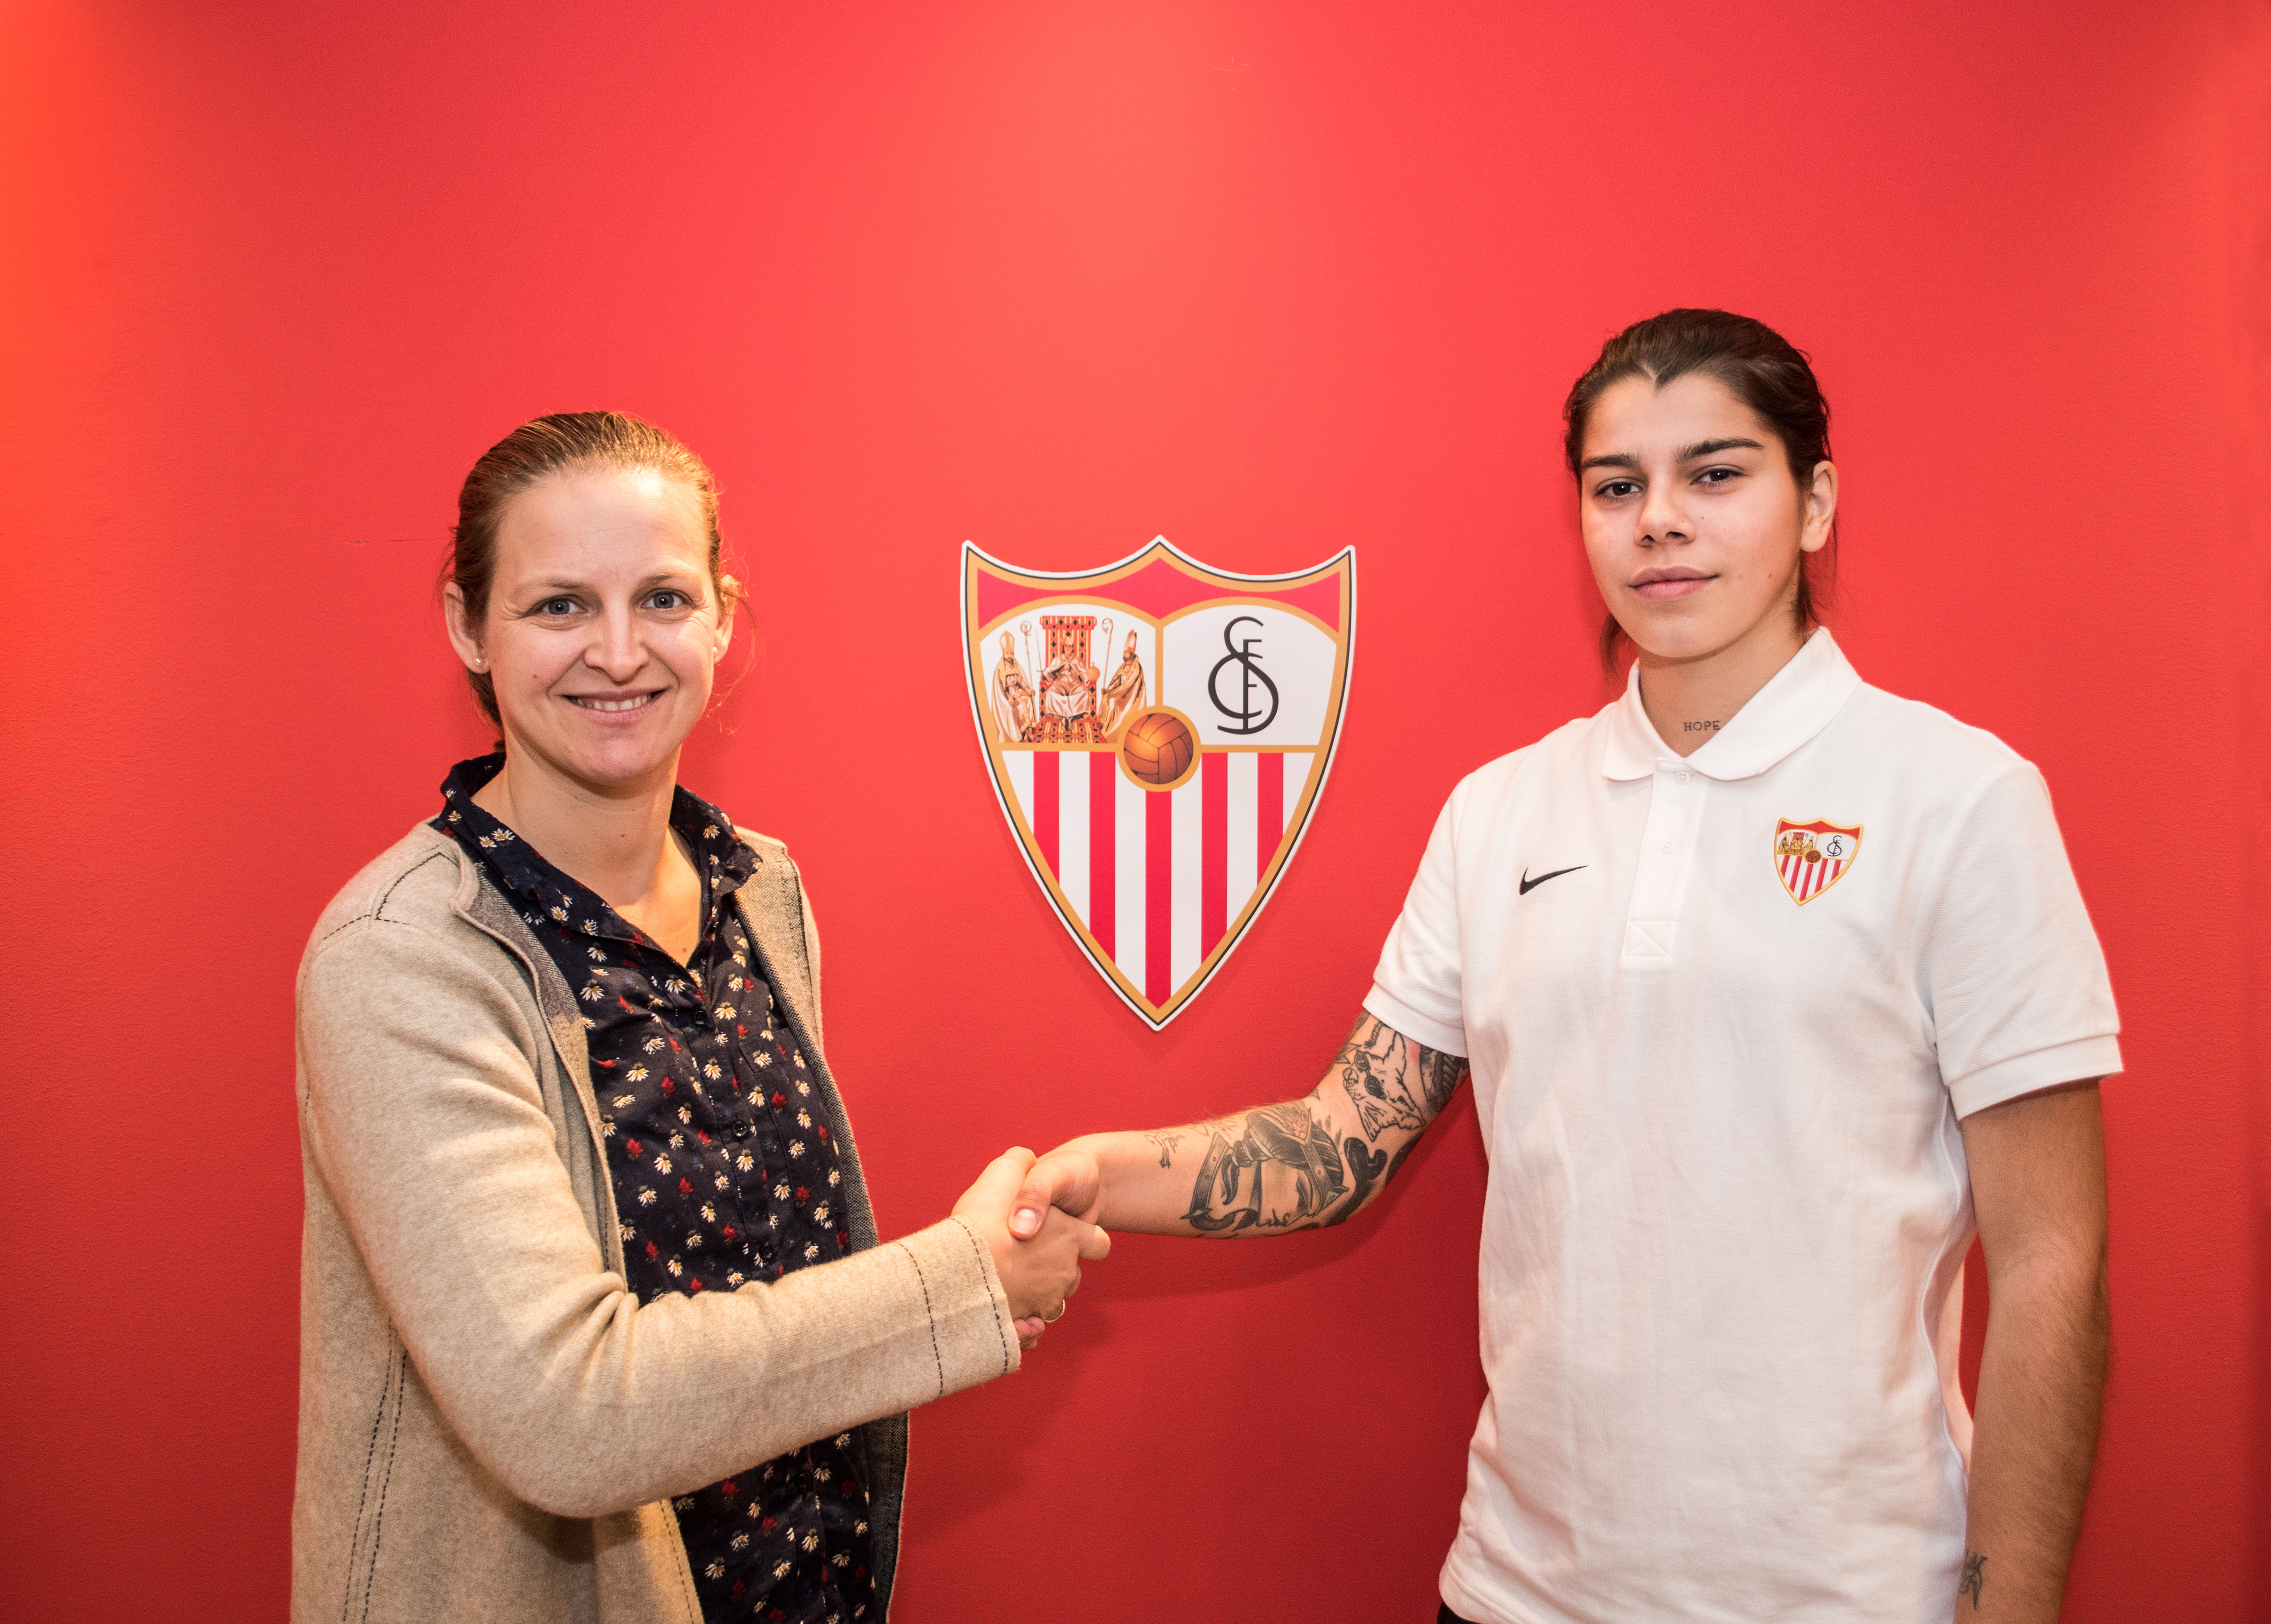 Nadya Kárpova y Amparo Gutiérrez, Directora de Fútbol Femenino del Sevilla FC, estrechan sus manos en su presentación